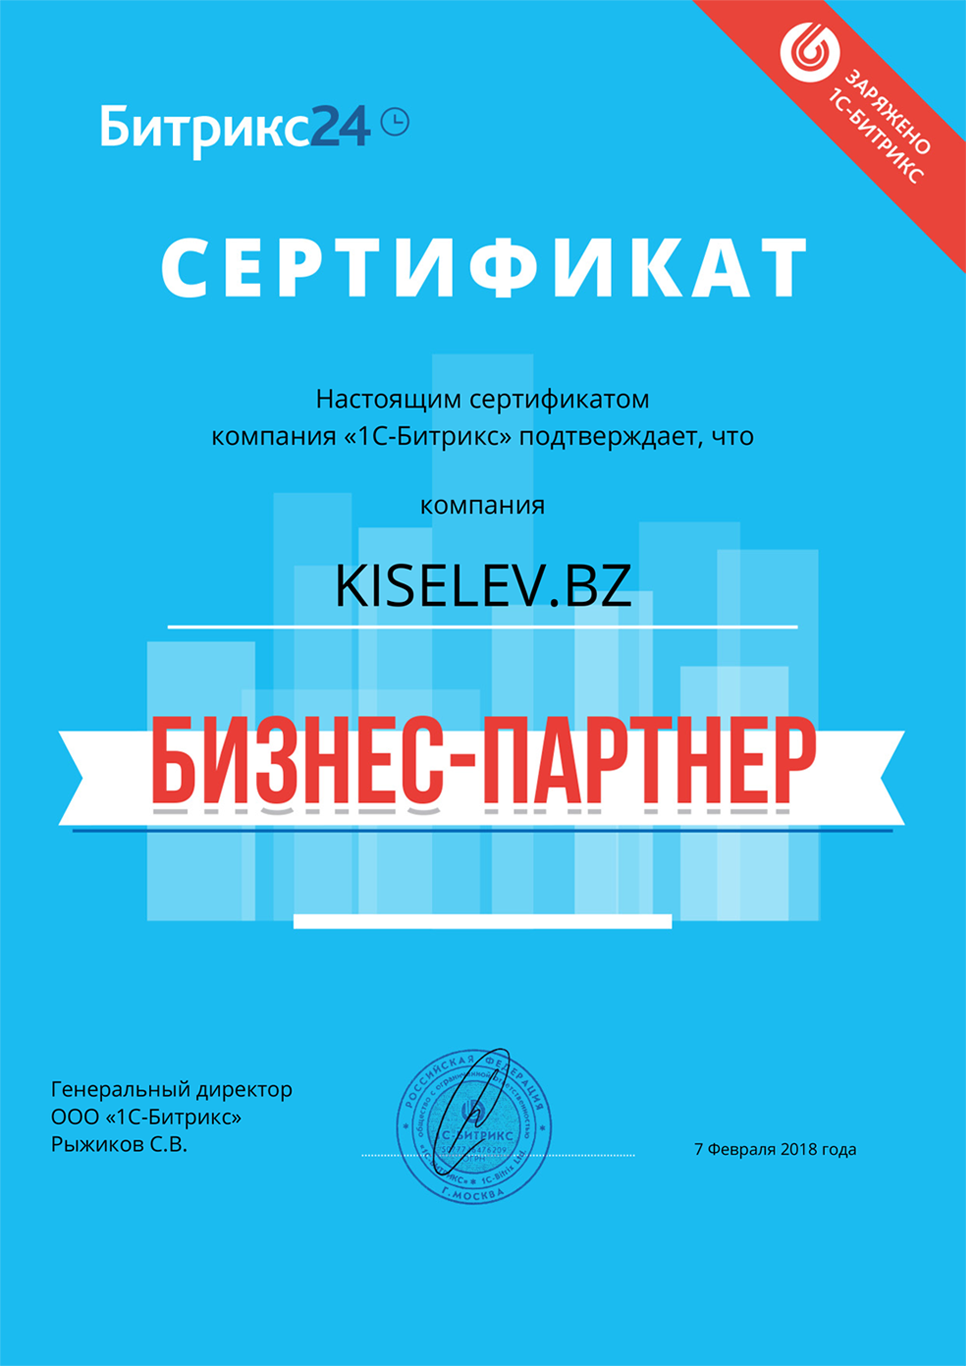 Сертификат партнёра по АМОСРМ в Липках